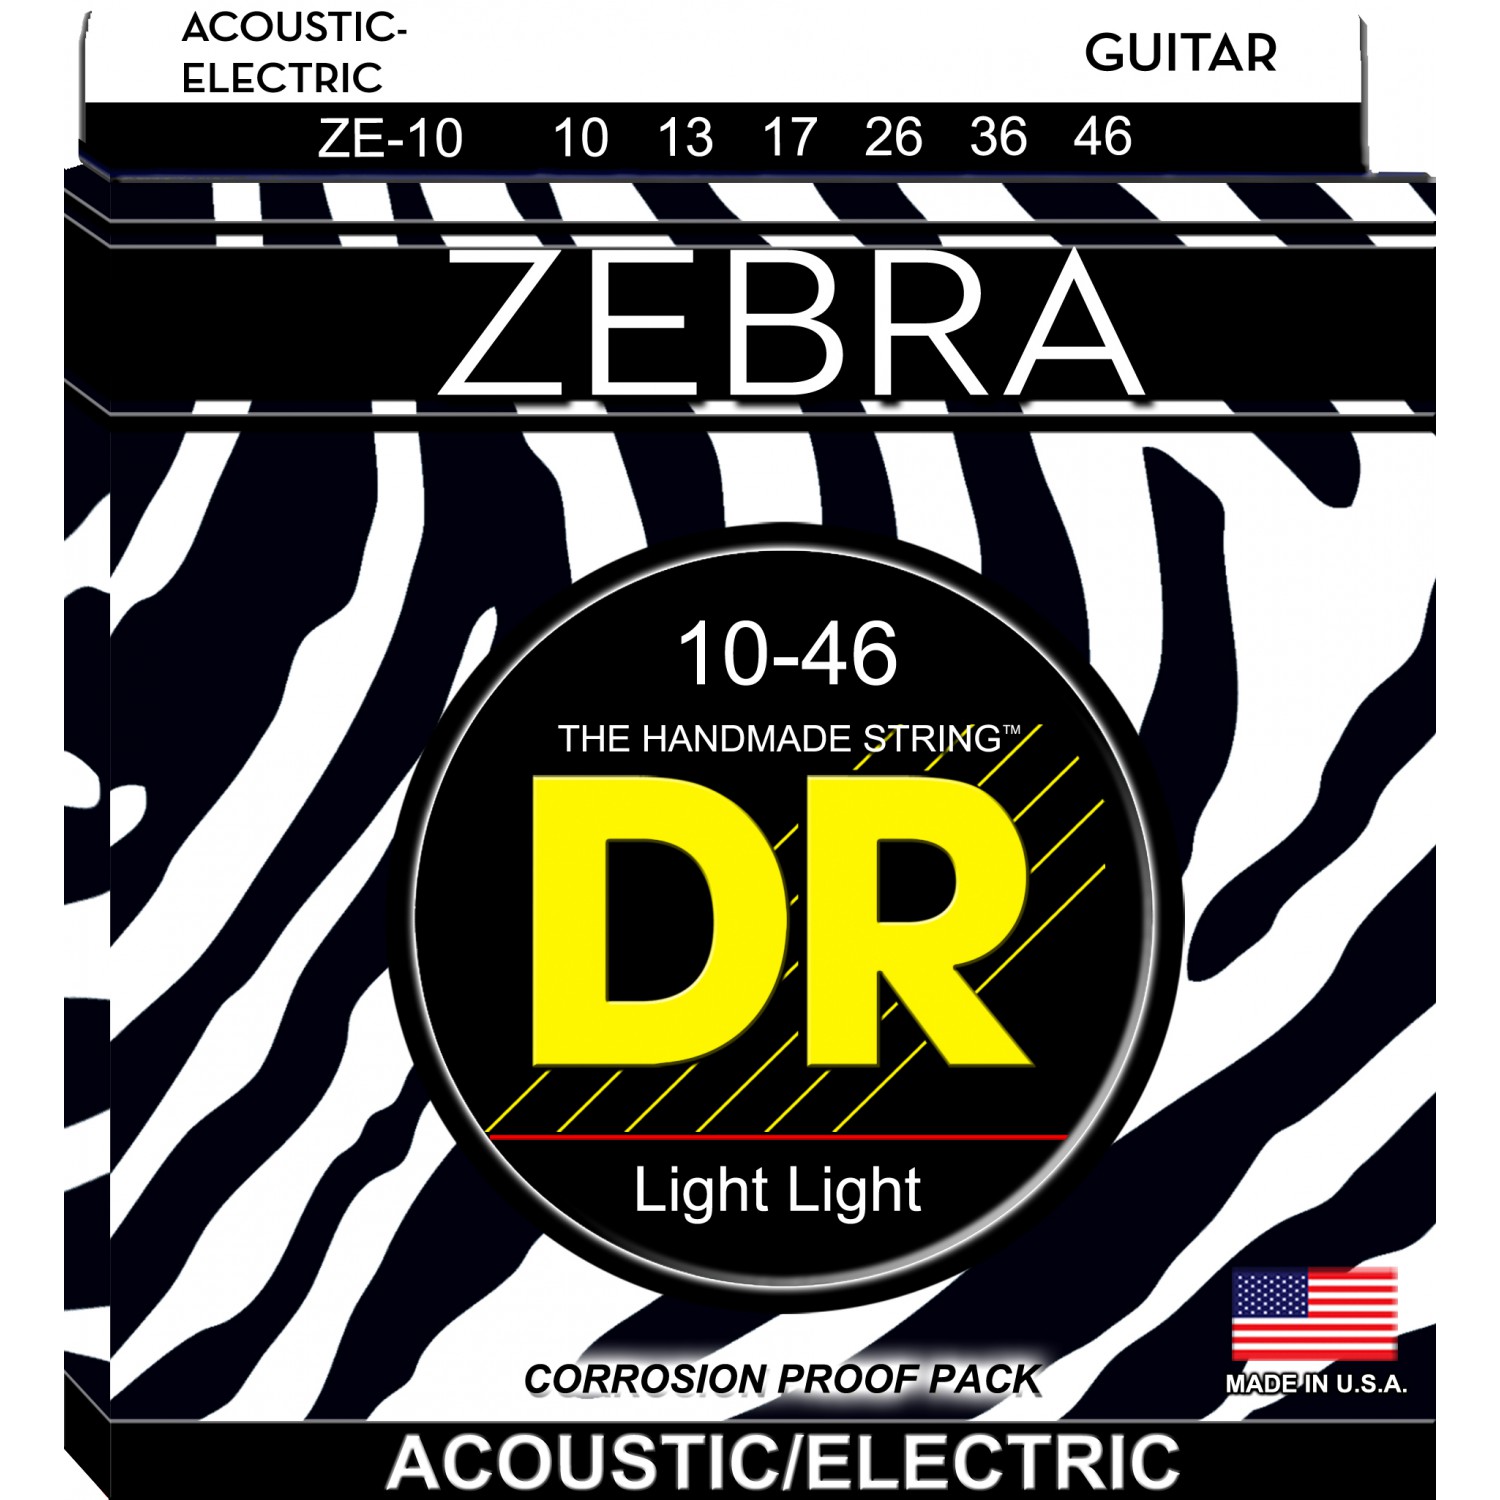 DR ZEBRA - struny do gitary akustycznej/elektrycznej Set, Light Light, .010-.046